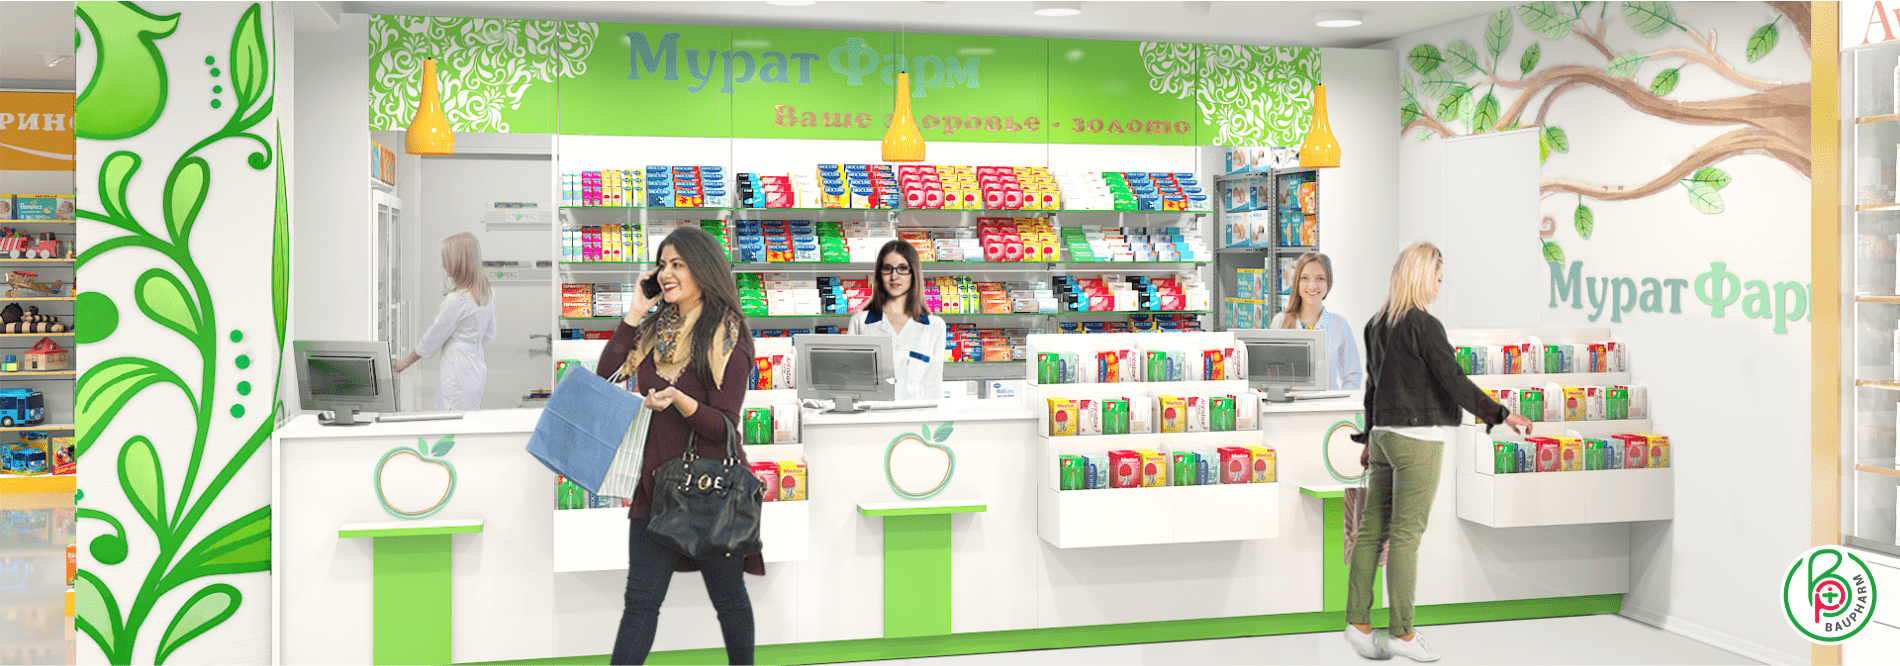 Аптечный супермаркет в Шымкенте 300 кв.м. Модернизация аптеки - полная смена формата работы